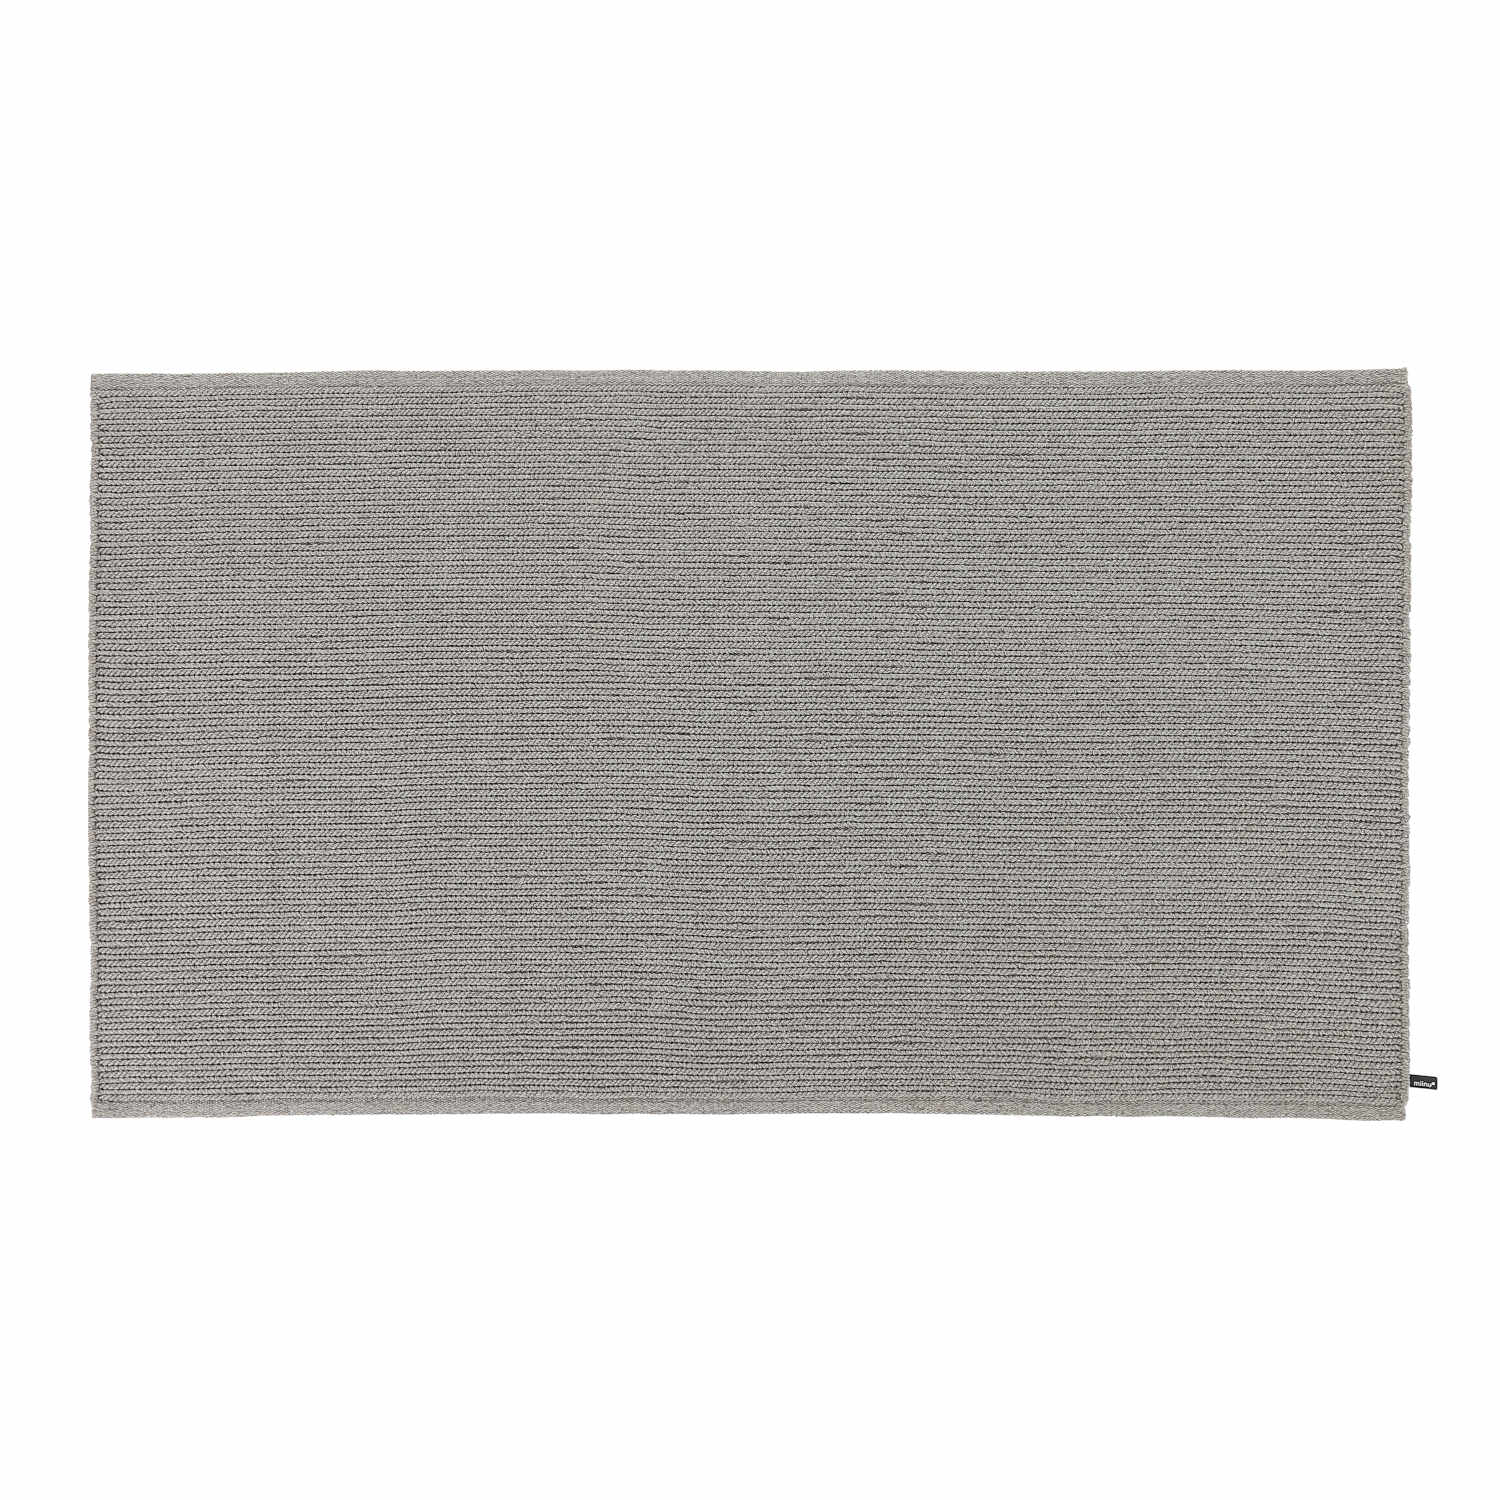 AeroOne Vol. I Outdoor Teppich, Grösse 170 x 240 cm, Farbe opal gray von miinu